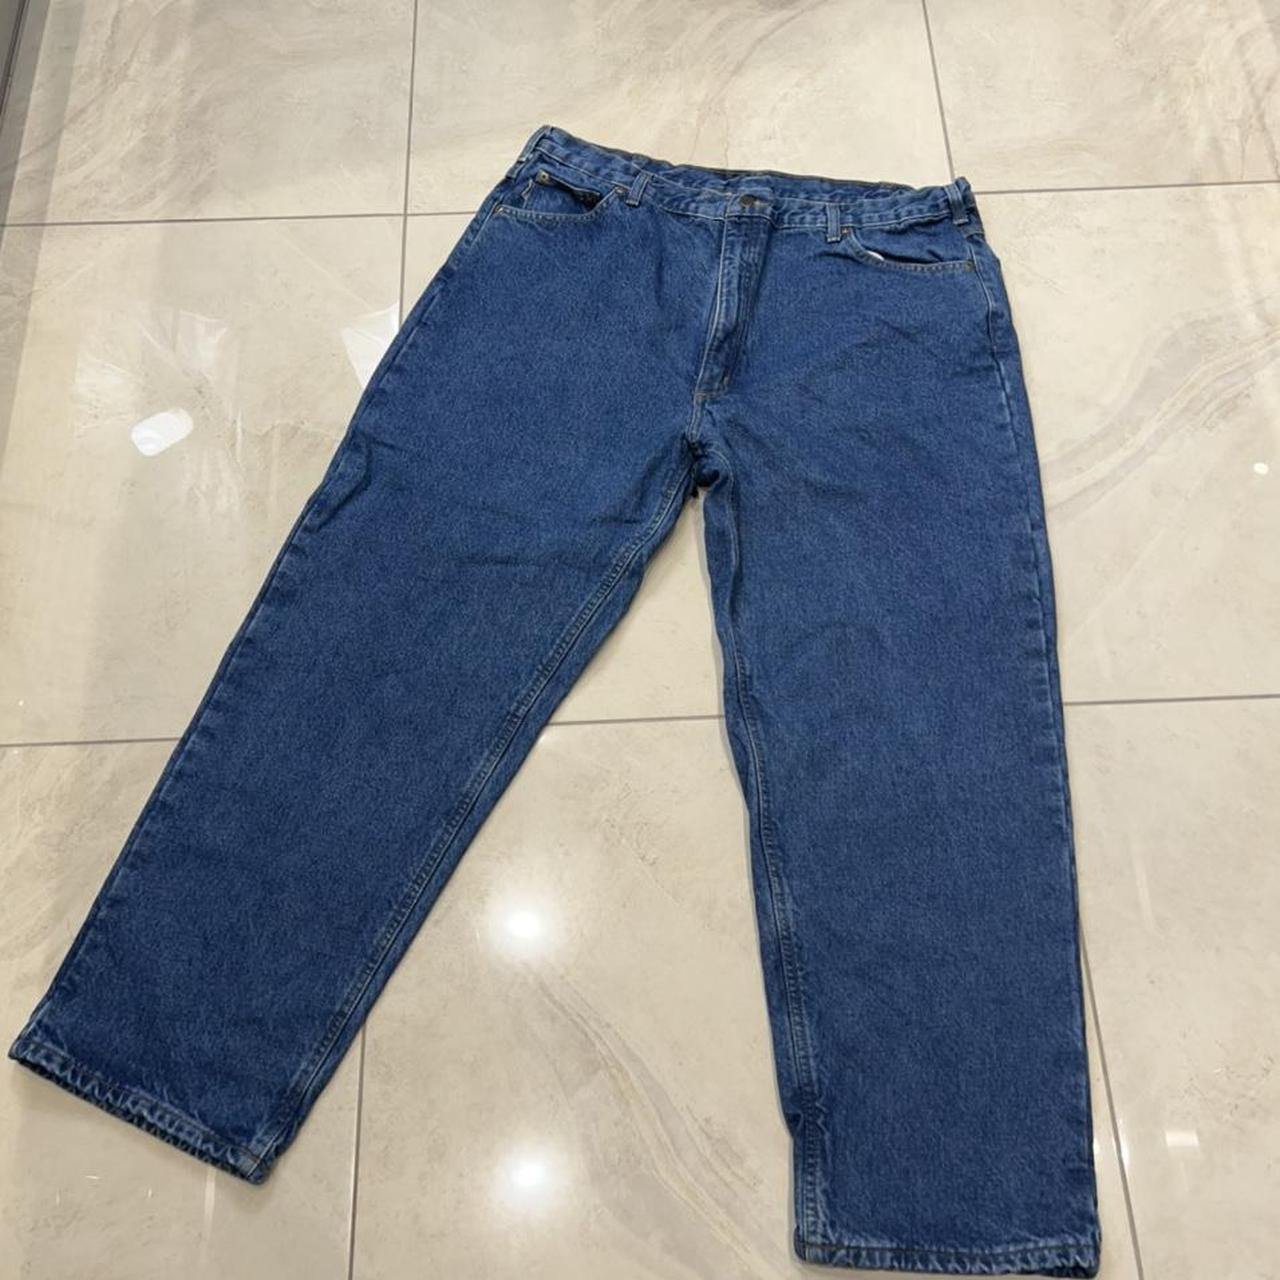 Carhartt lined blue jeans Size - 42 waist ... - Depop